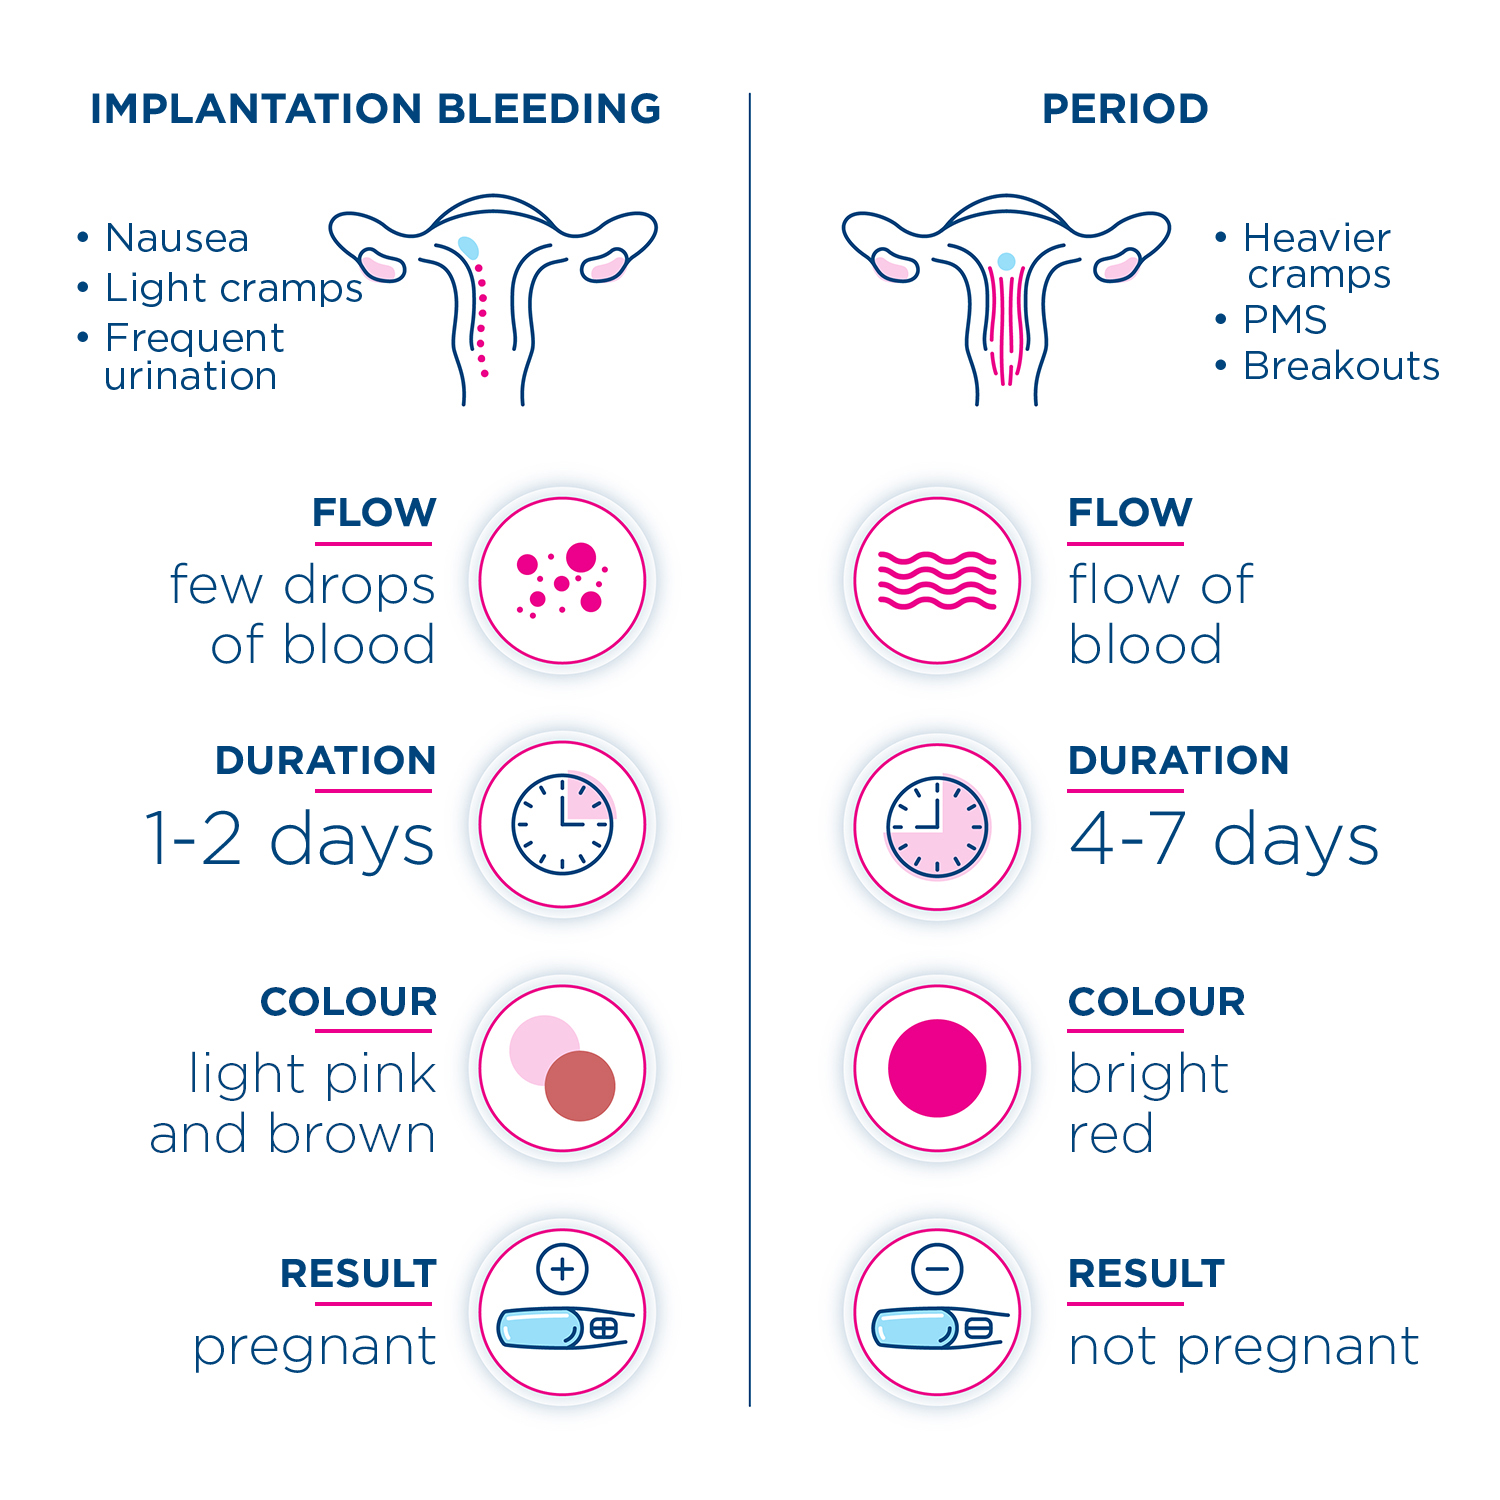 Infografía que compara los signos y síntomas para distinguir la diferencia entre el sangrado de implantación y el período